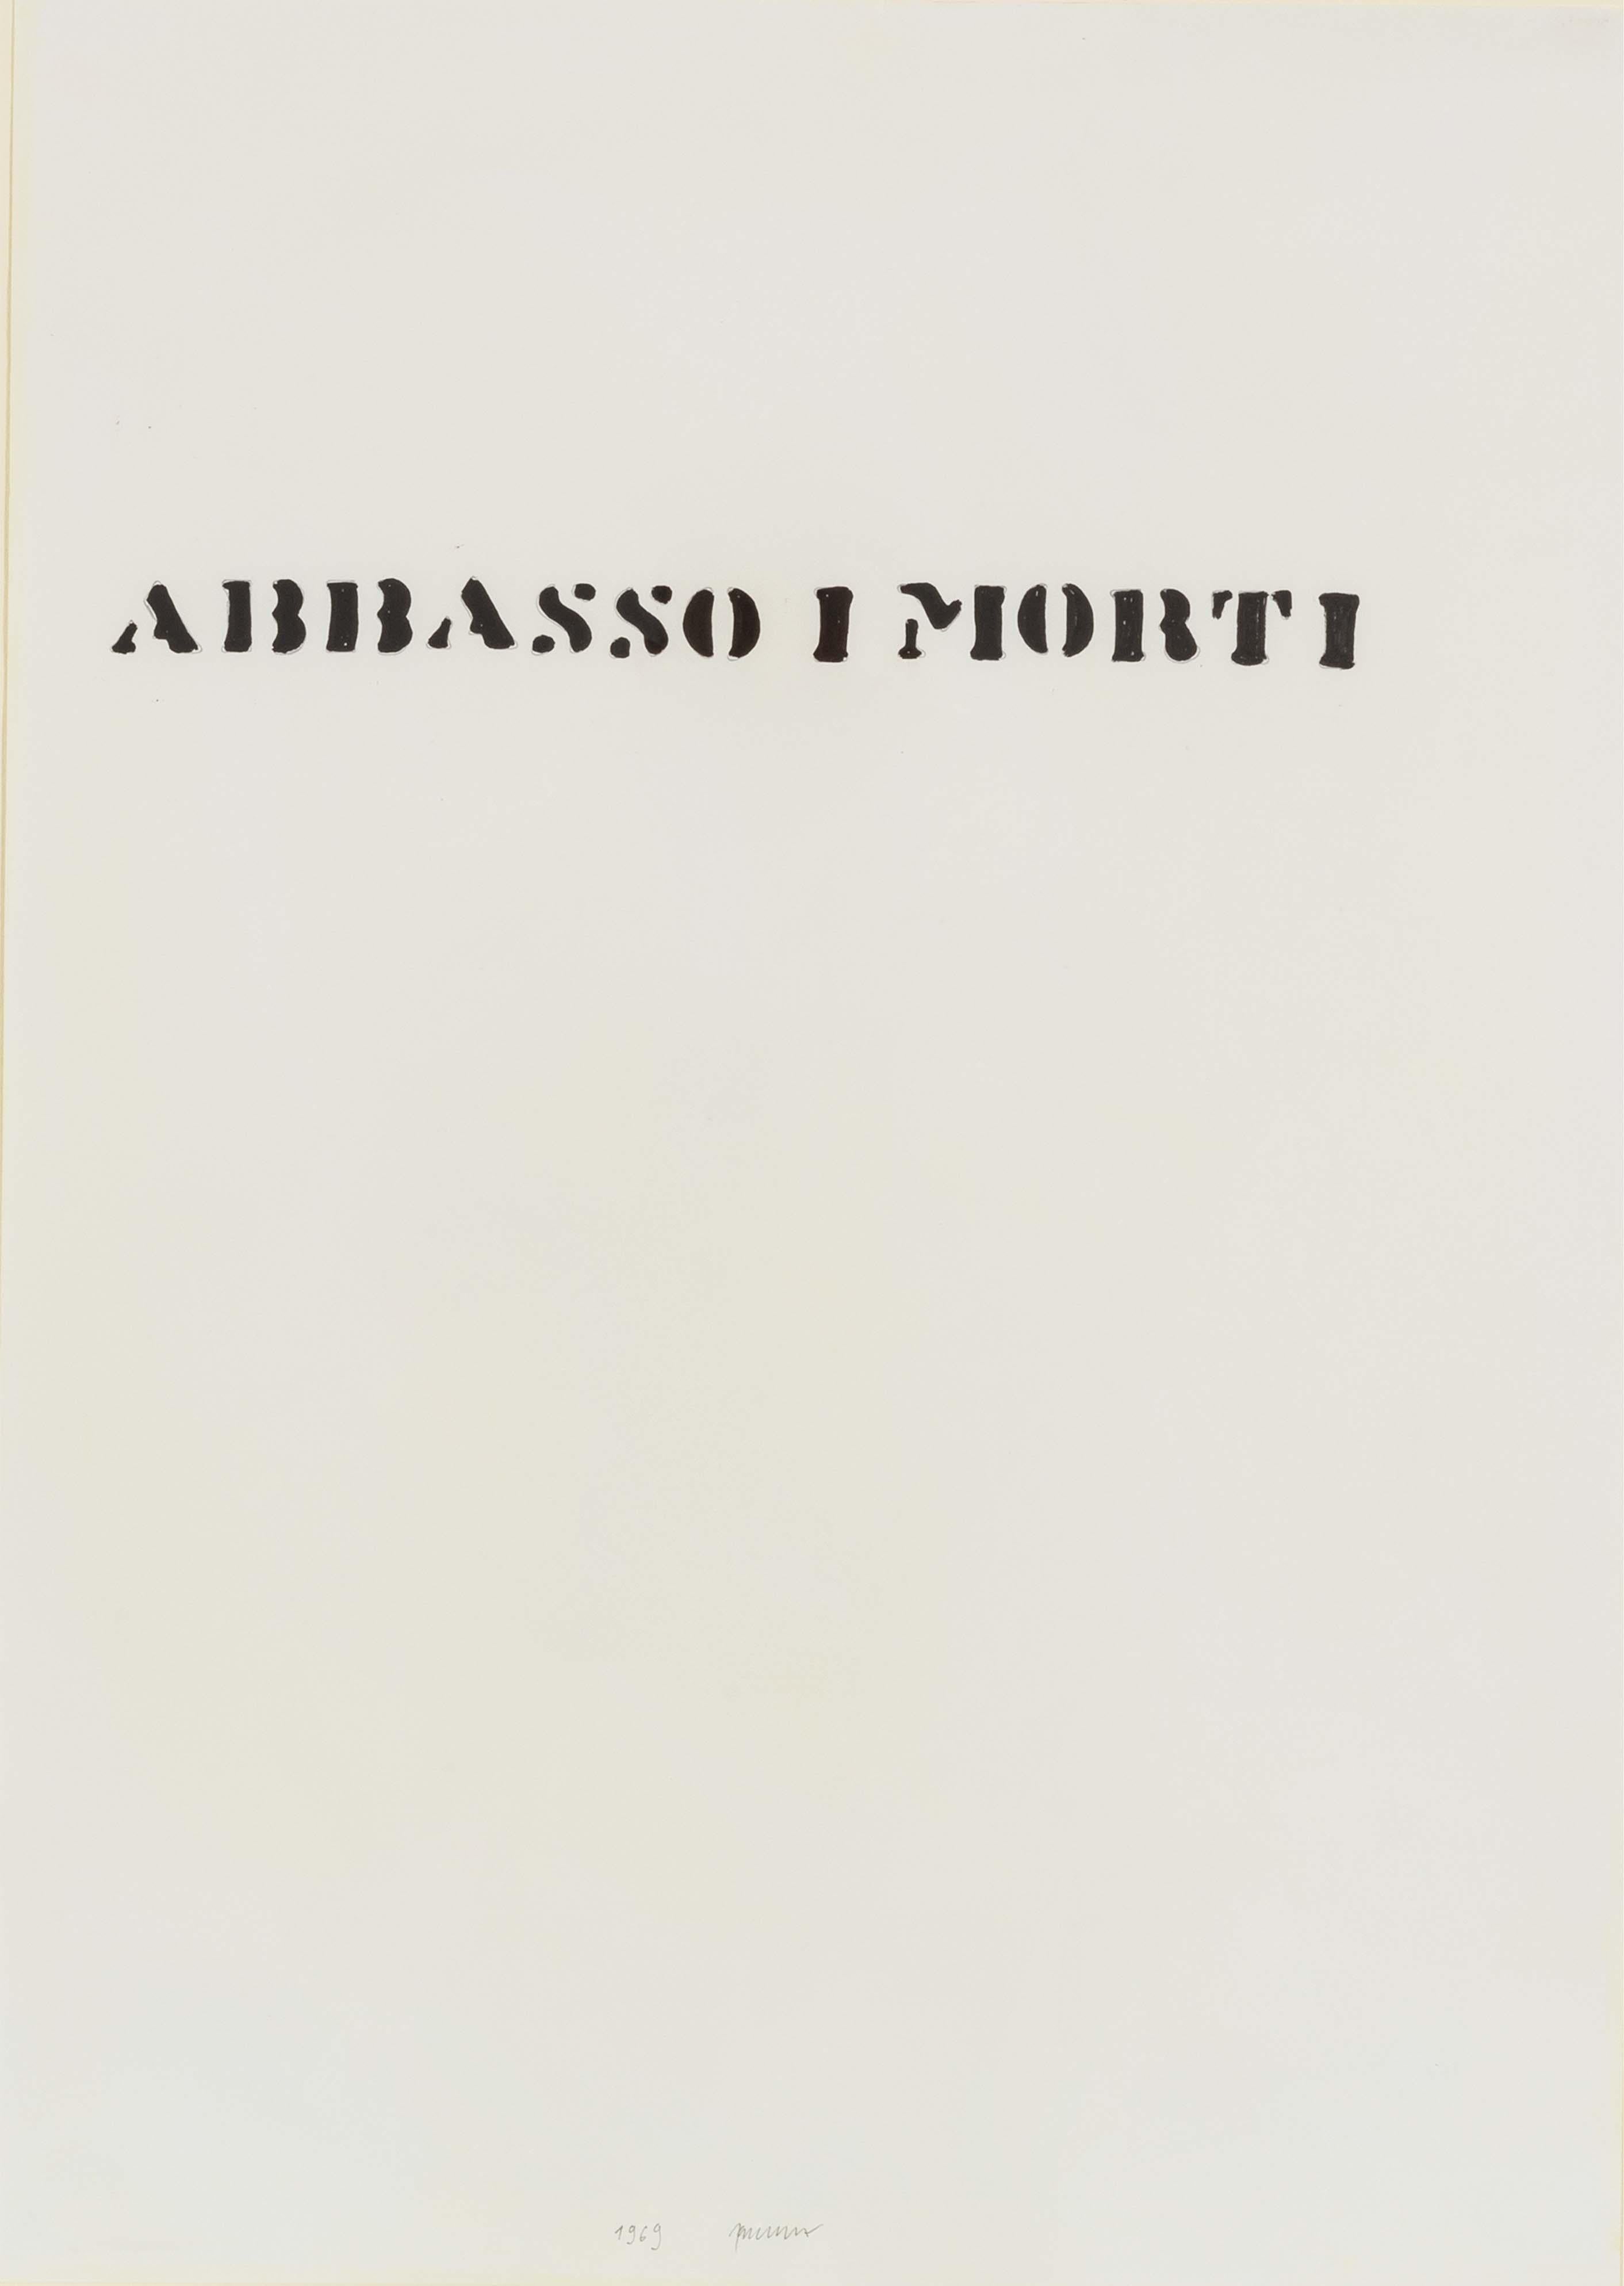 Werk aus den späten 1960er Jahren, signiert und datiert auf der Vorderseite, begleitet von einem Echtheitszertifikat auf Fotografie, ausgestellt von der Fondazione Sarenco.
Von der Sarenco-Stiftung, Italien.
Da das Stück aus Italien verschickt wird,